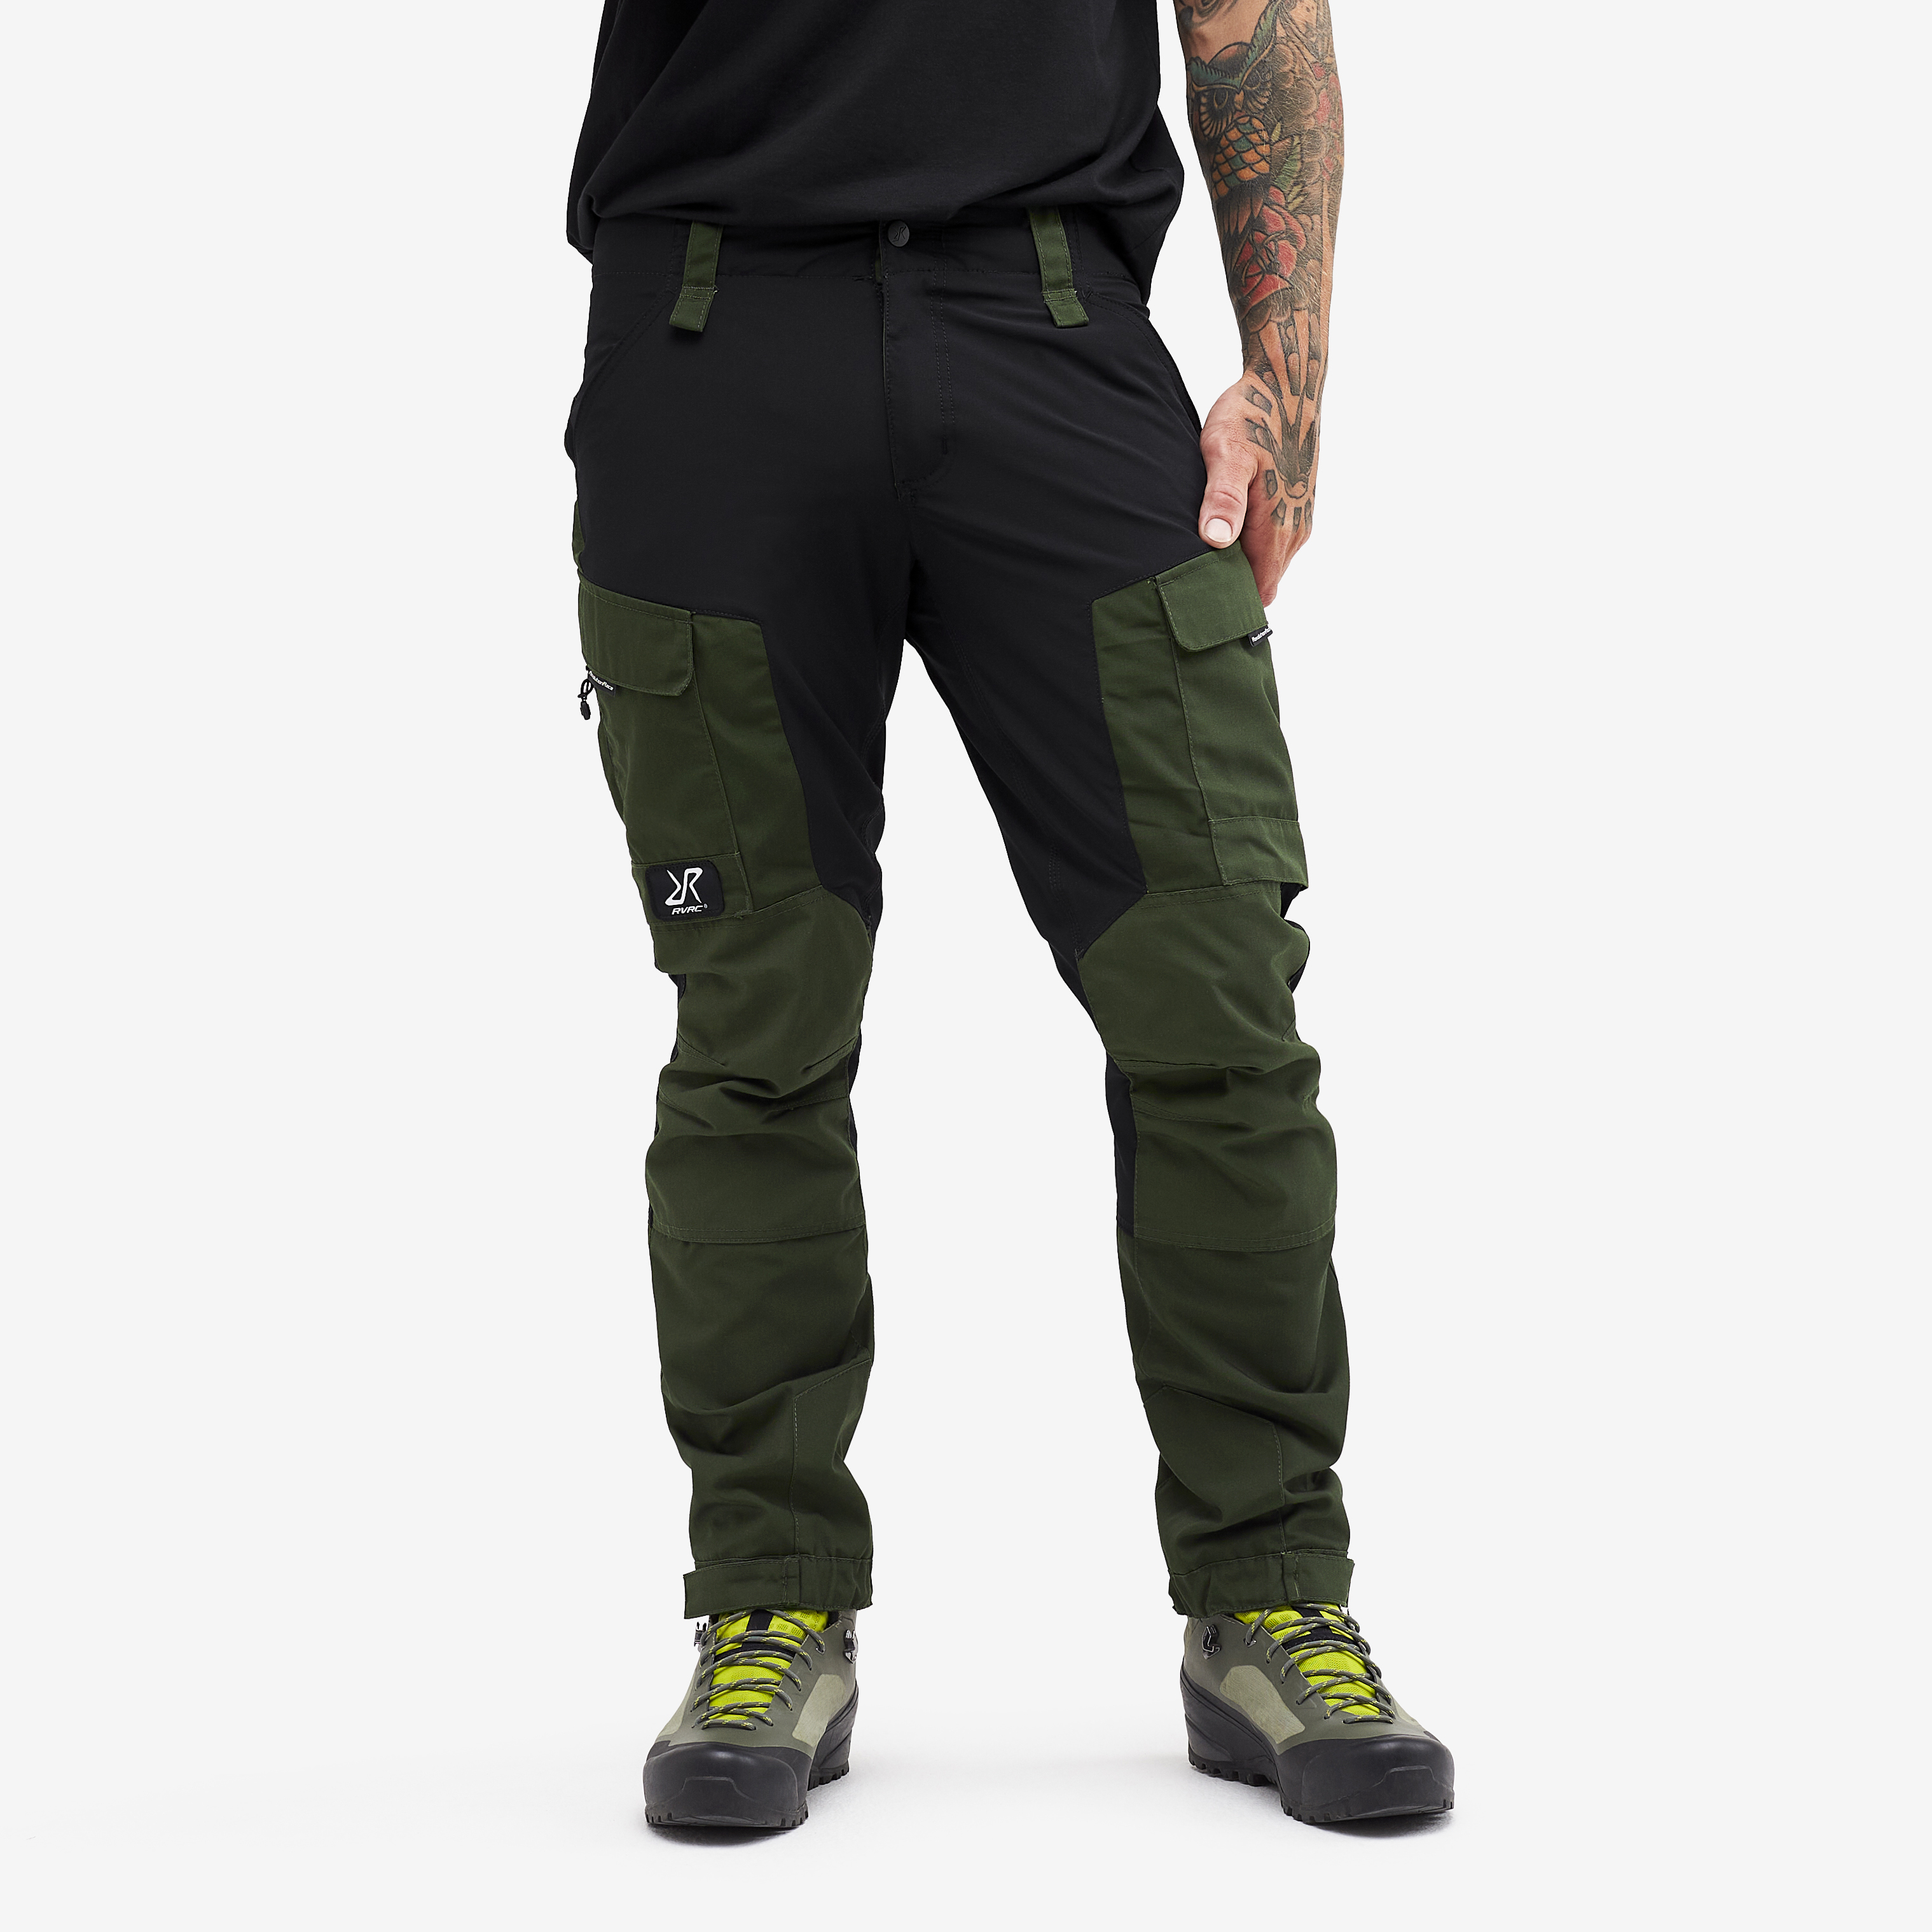 RVRC GP Short outdoor pants for men in green